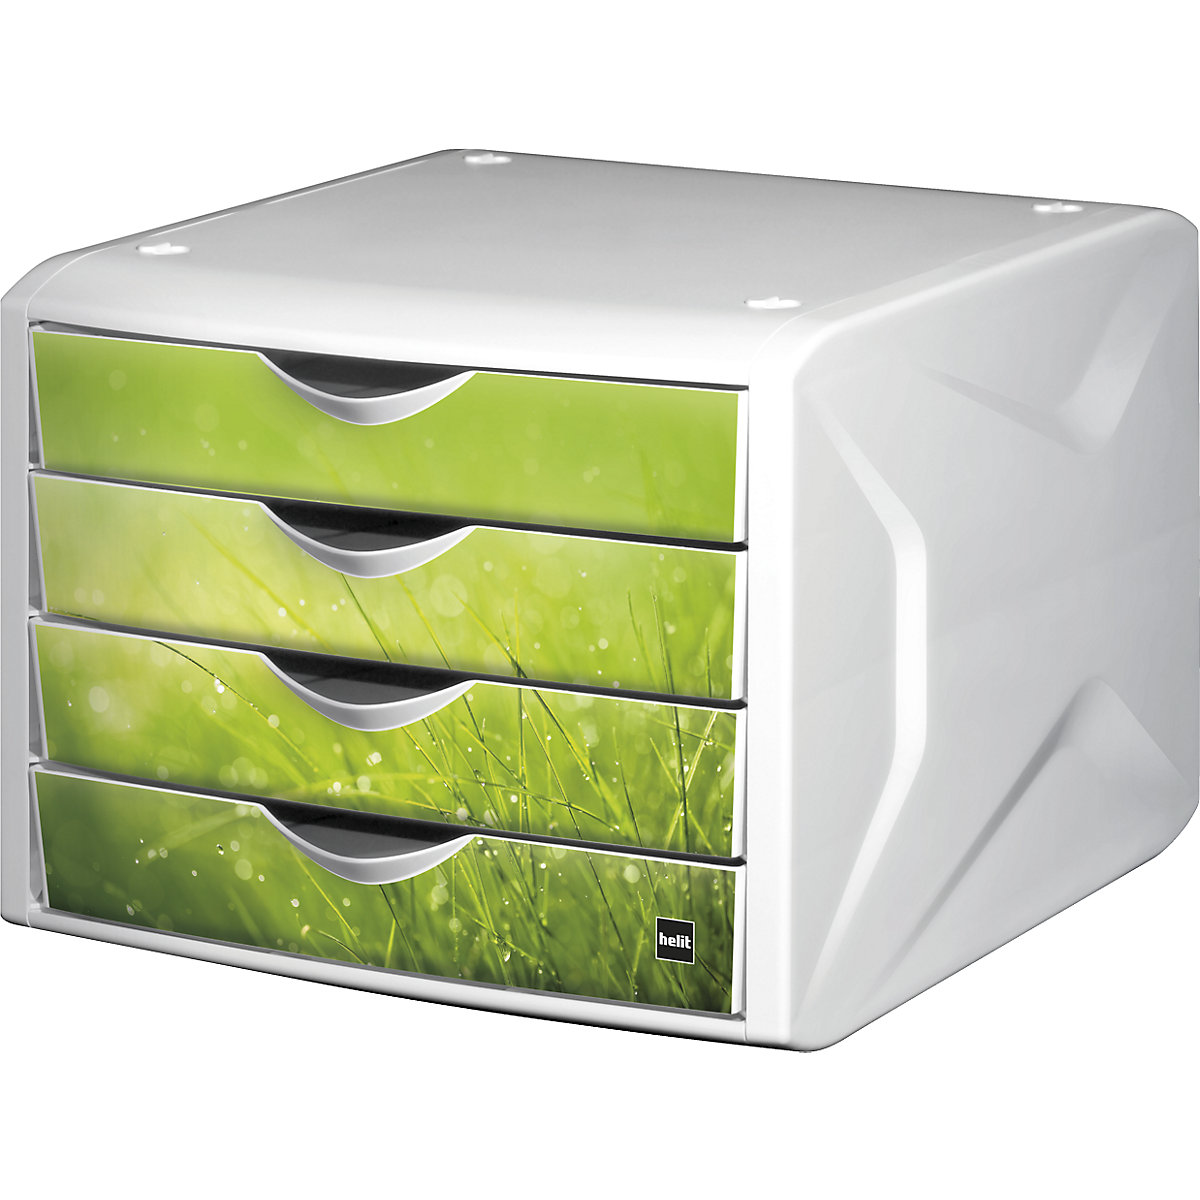 Cutie cu sertare – helit, î. x lăț. x ad. 212 x 262 x 330 mm, amb. 5 buc., design sertare springtime